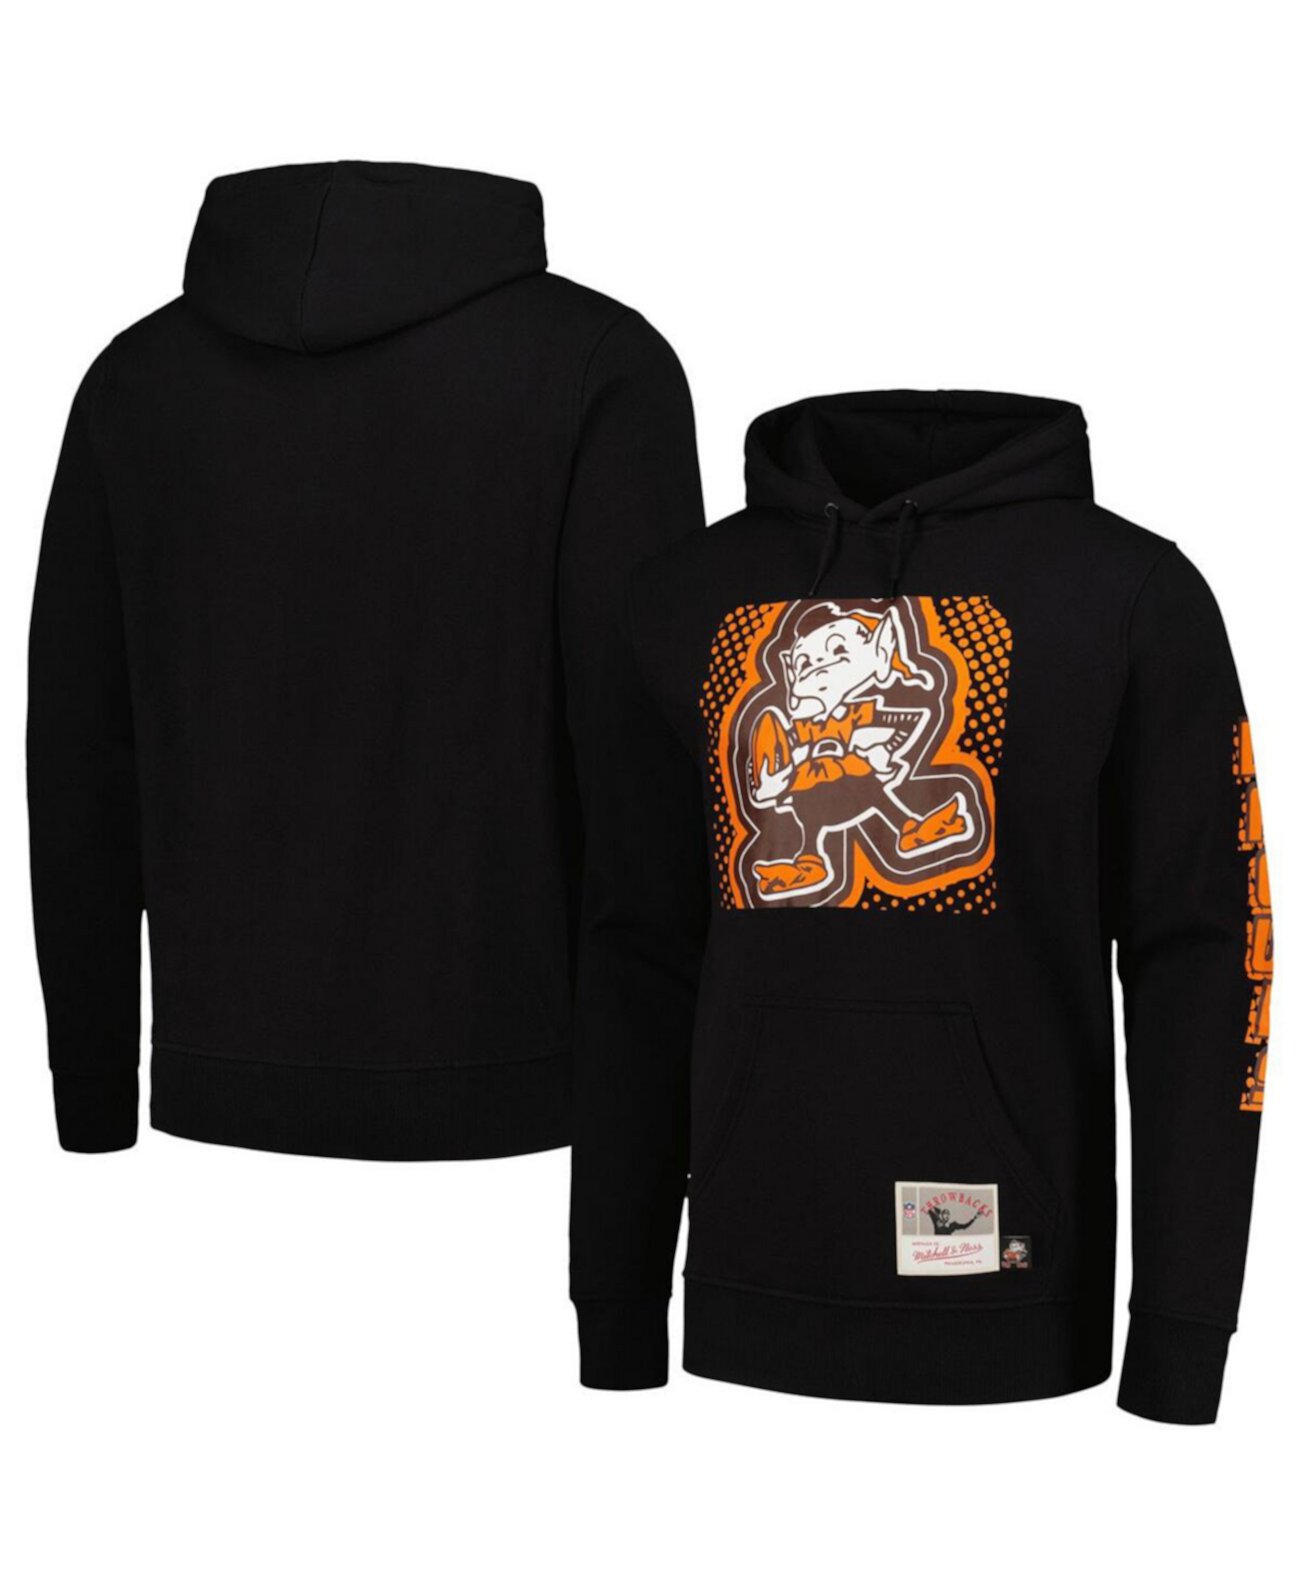 Мужской черный пуловер с капюшоном Cleveland Browns Gridiron Classics Big Face 7.0 Mitchell & Ness